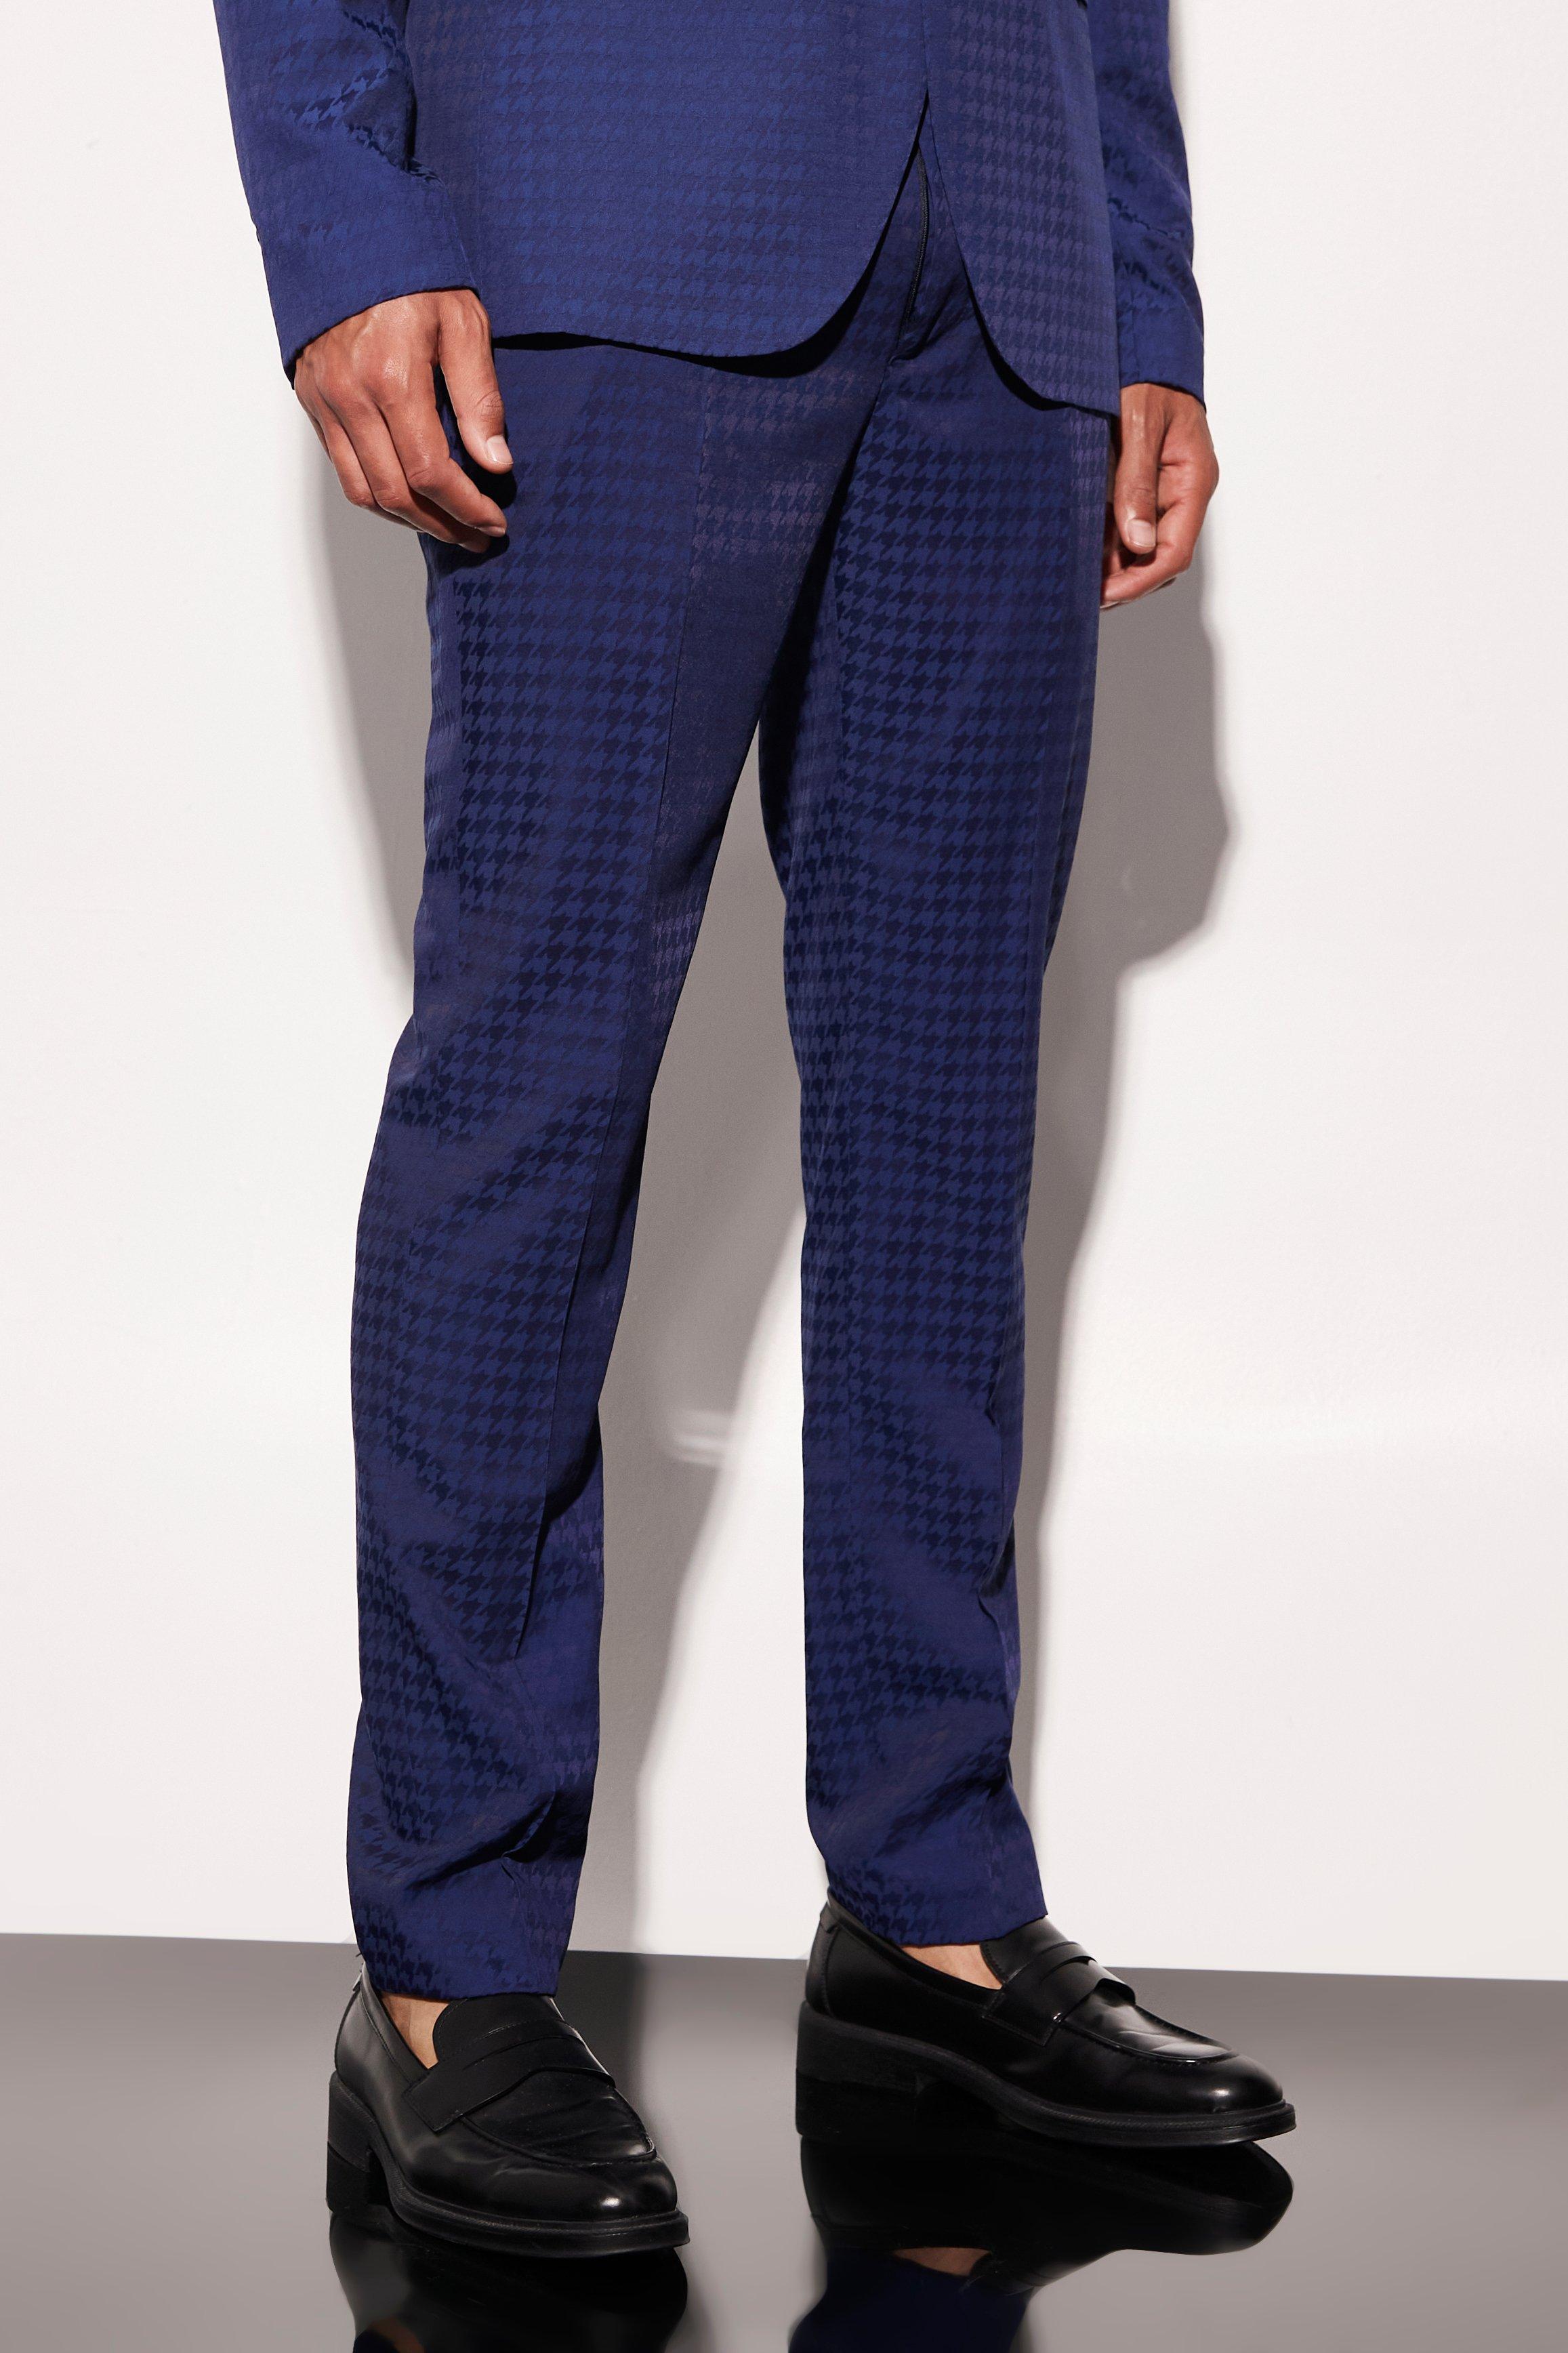 tall - pantalon de costume court à imprimé pied-de-poule homme - bleu - 36, bleu